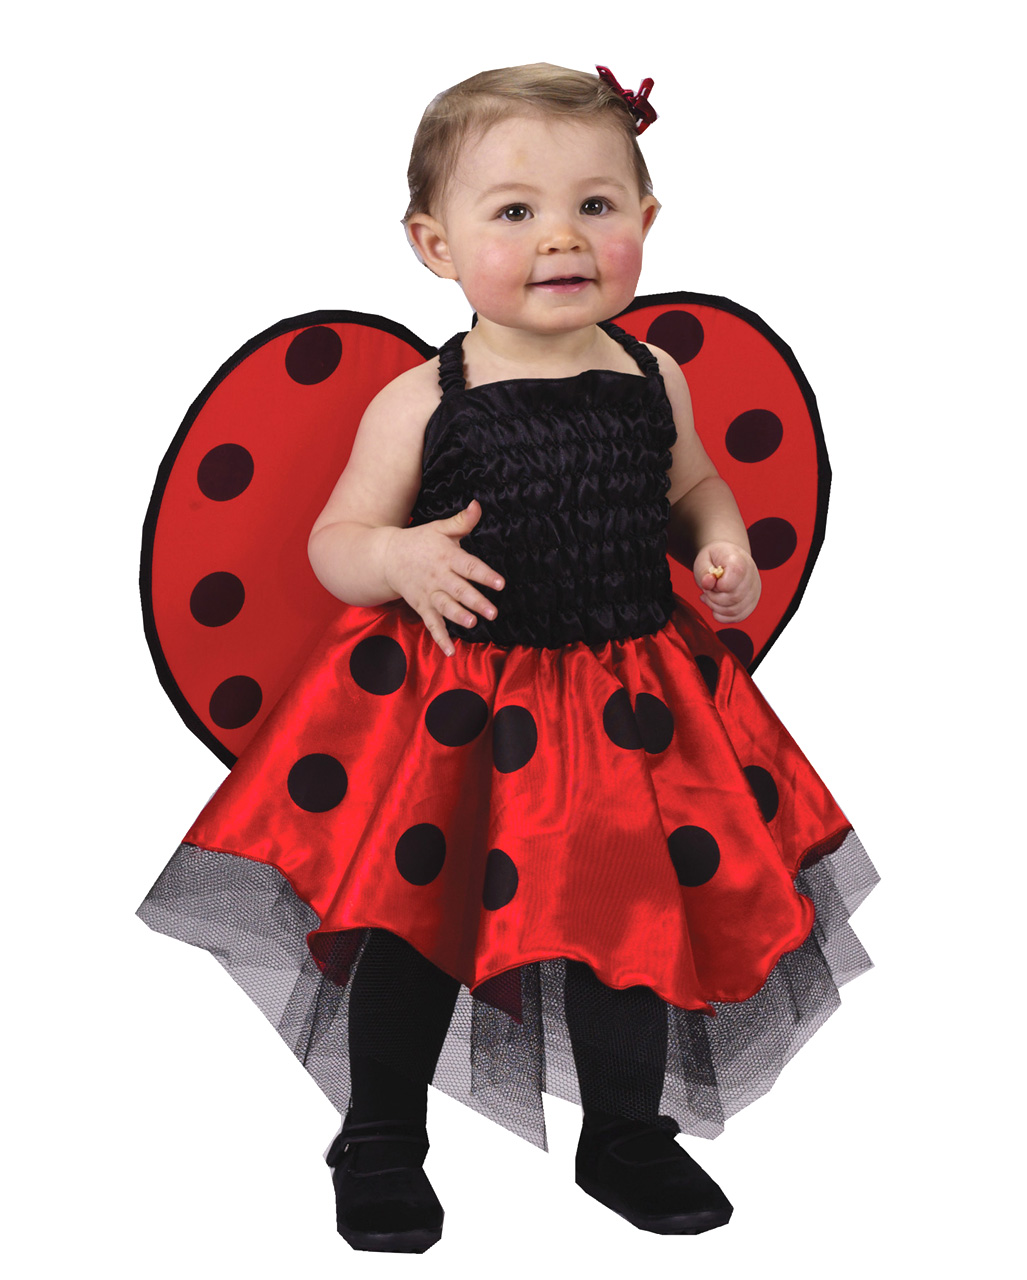 Baby Ladybug Costume, Ladybug Baby Costume